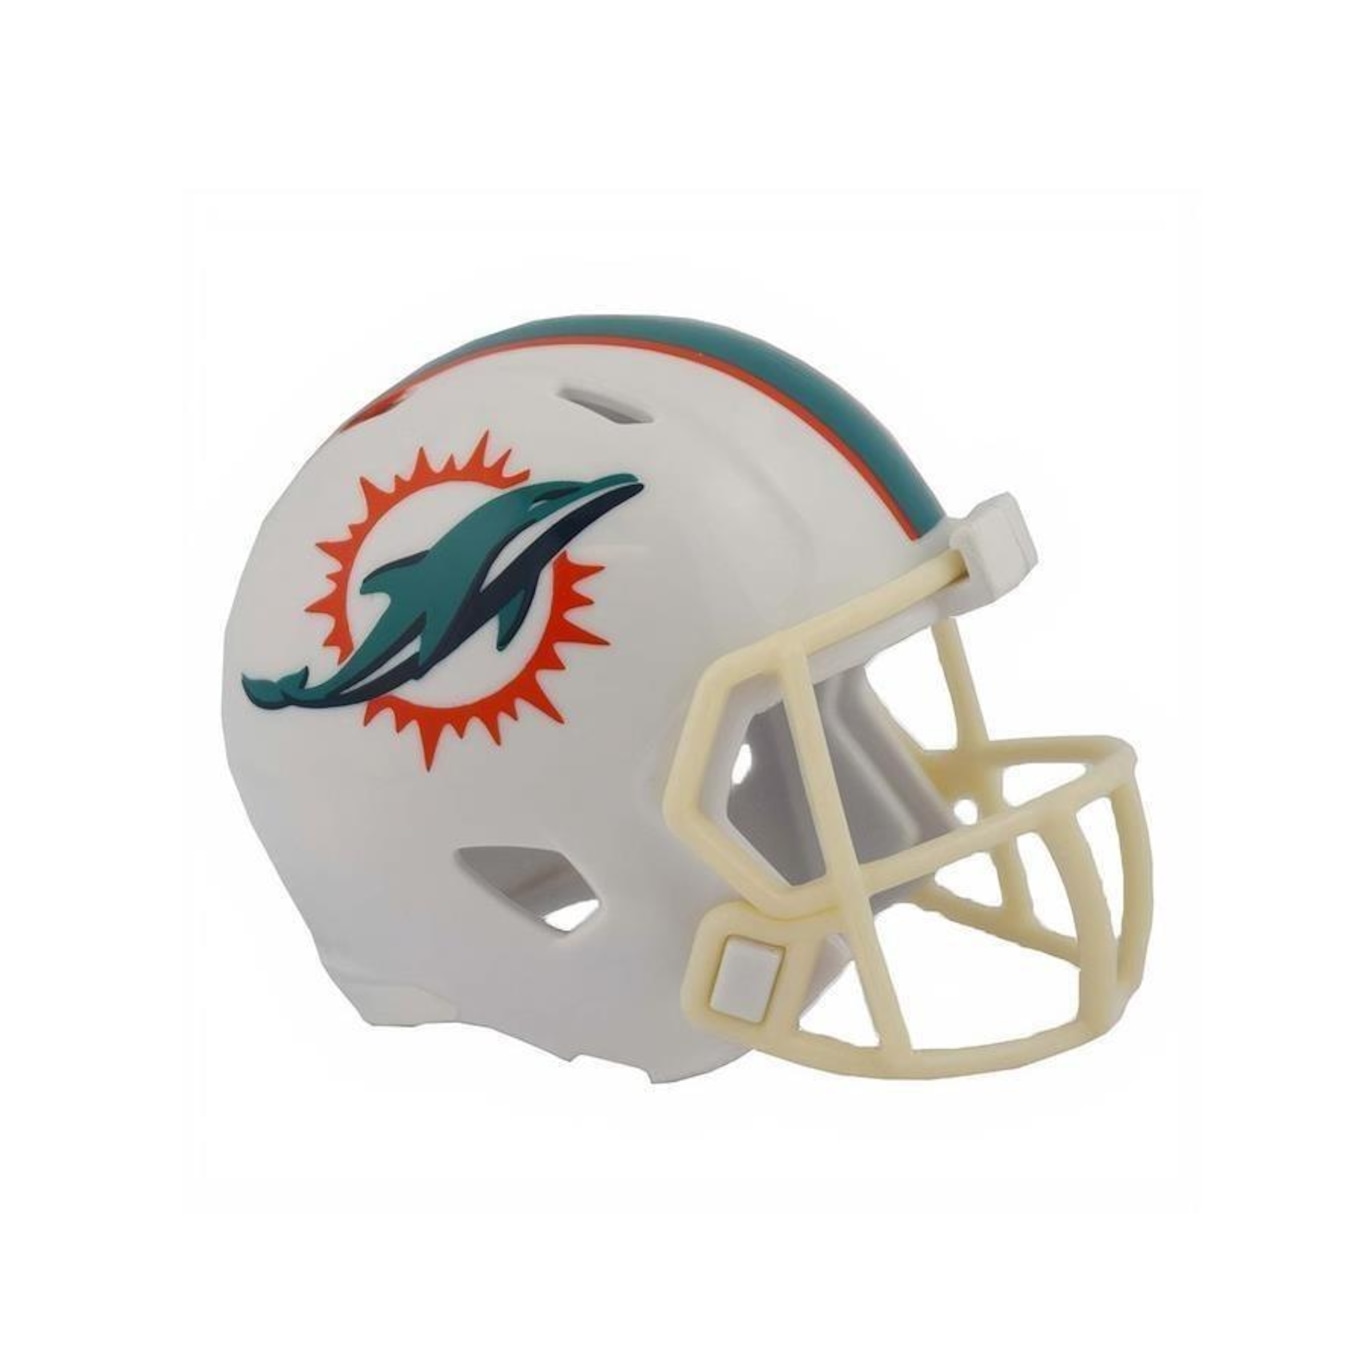 Preços baixos em Miami Dolphins Capacetes usadas em Jogos da NFL